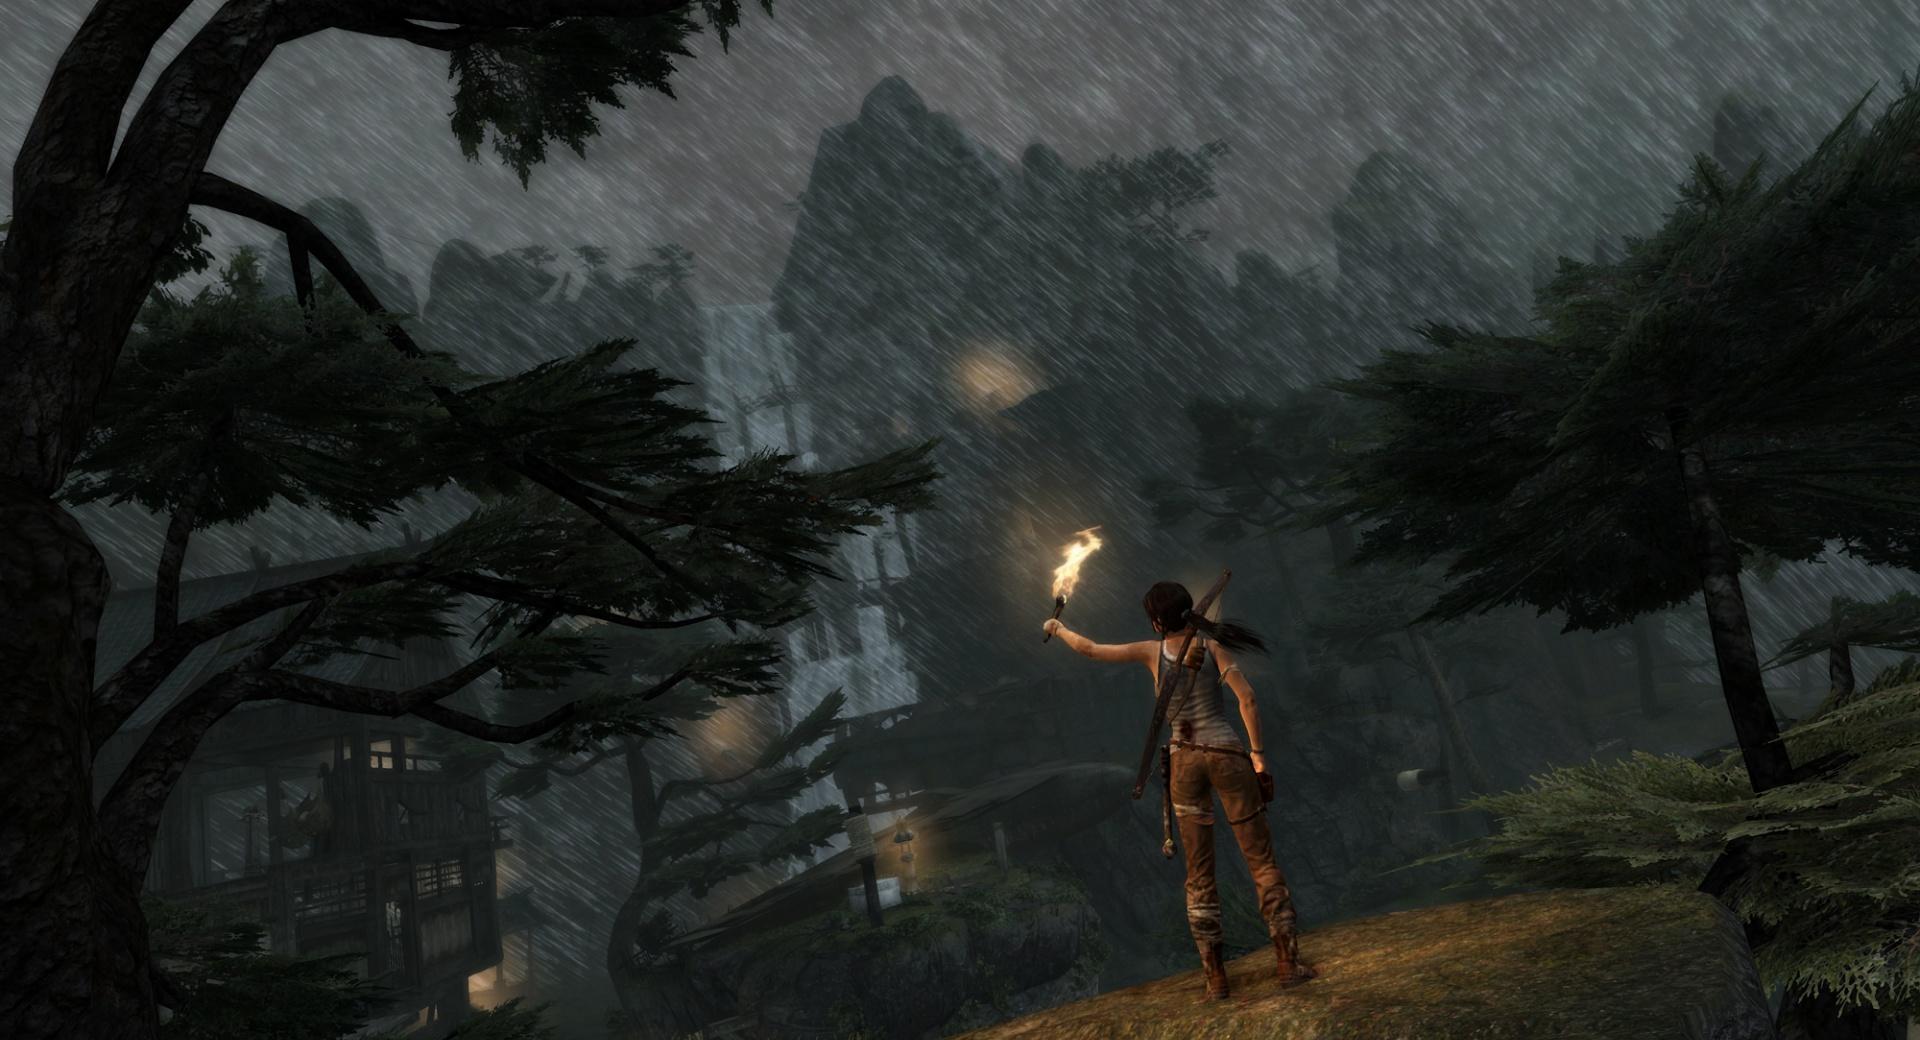 Lara Croft in the Rain (Tomb Raider 2013) at 2048 x 2048 iPad size wallpapers HD quality